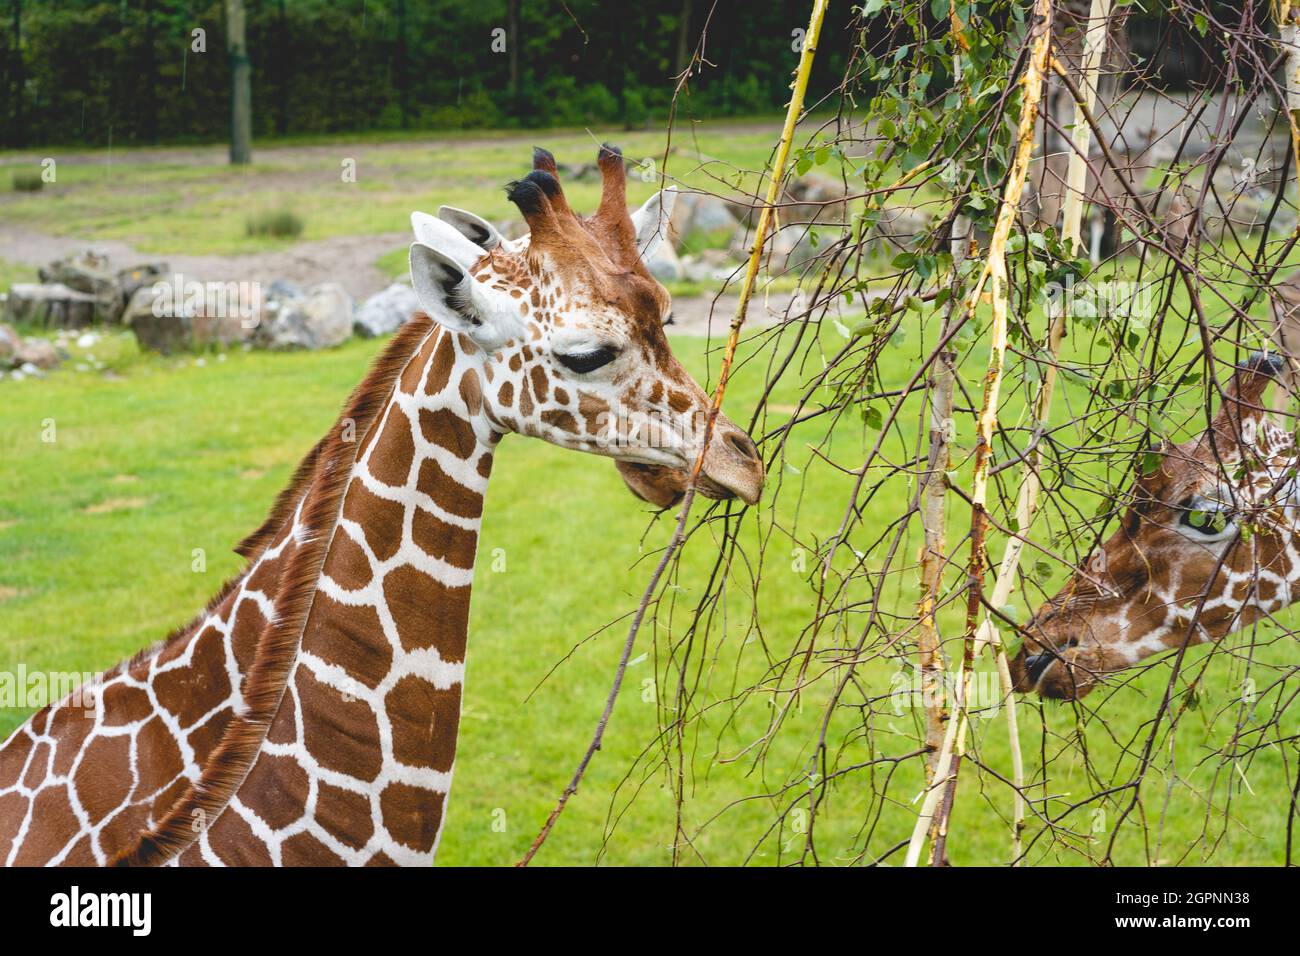 Giraf in the dutch zoo Diergaarde Blijdorp in Rotterdam. Stock Photo